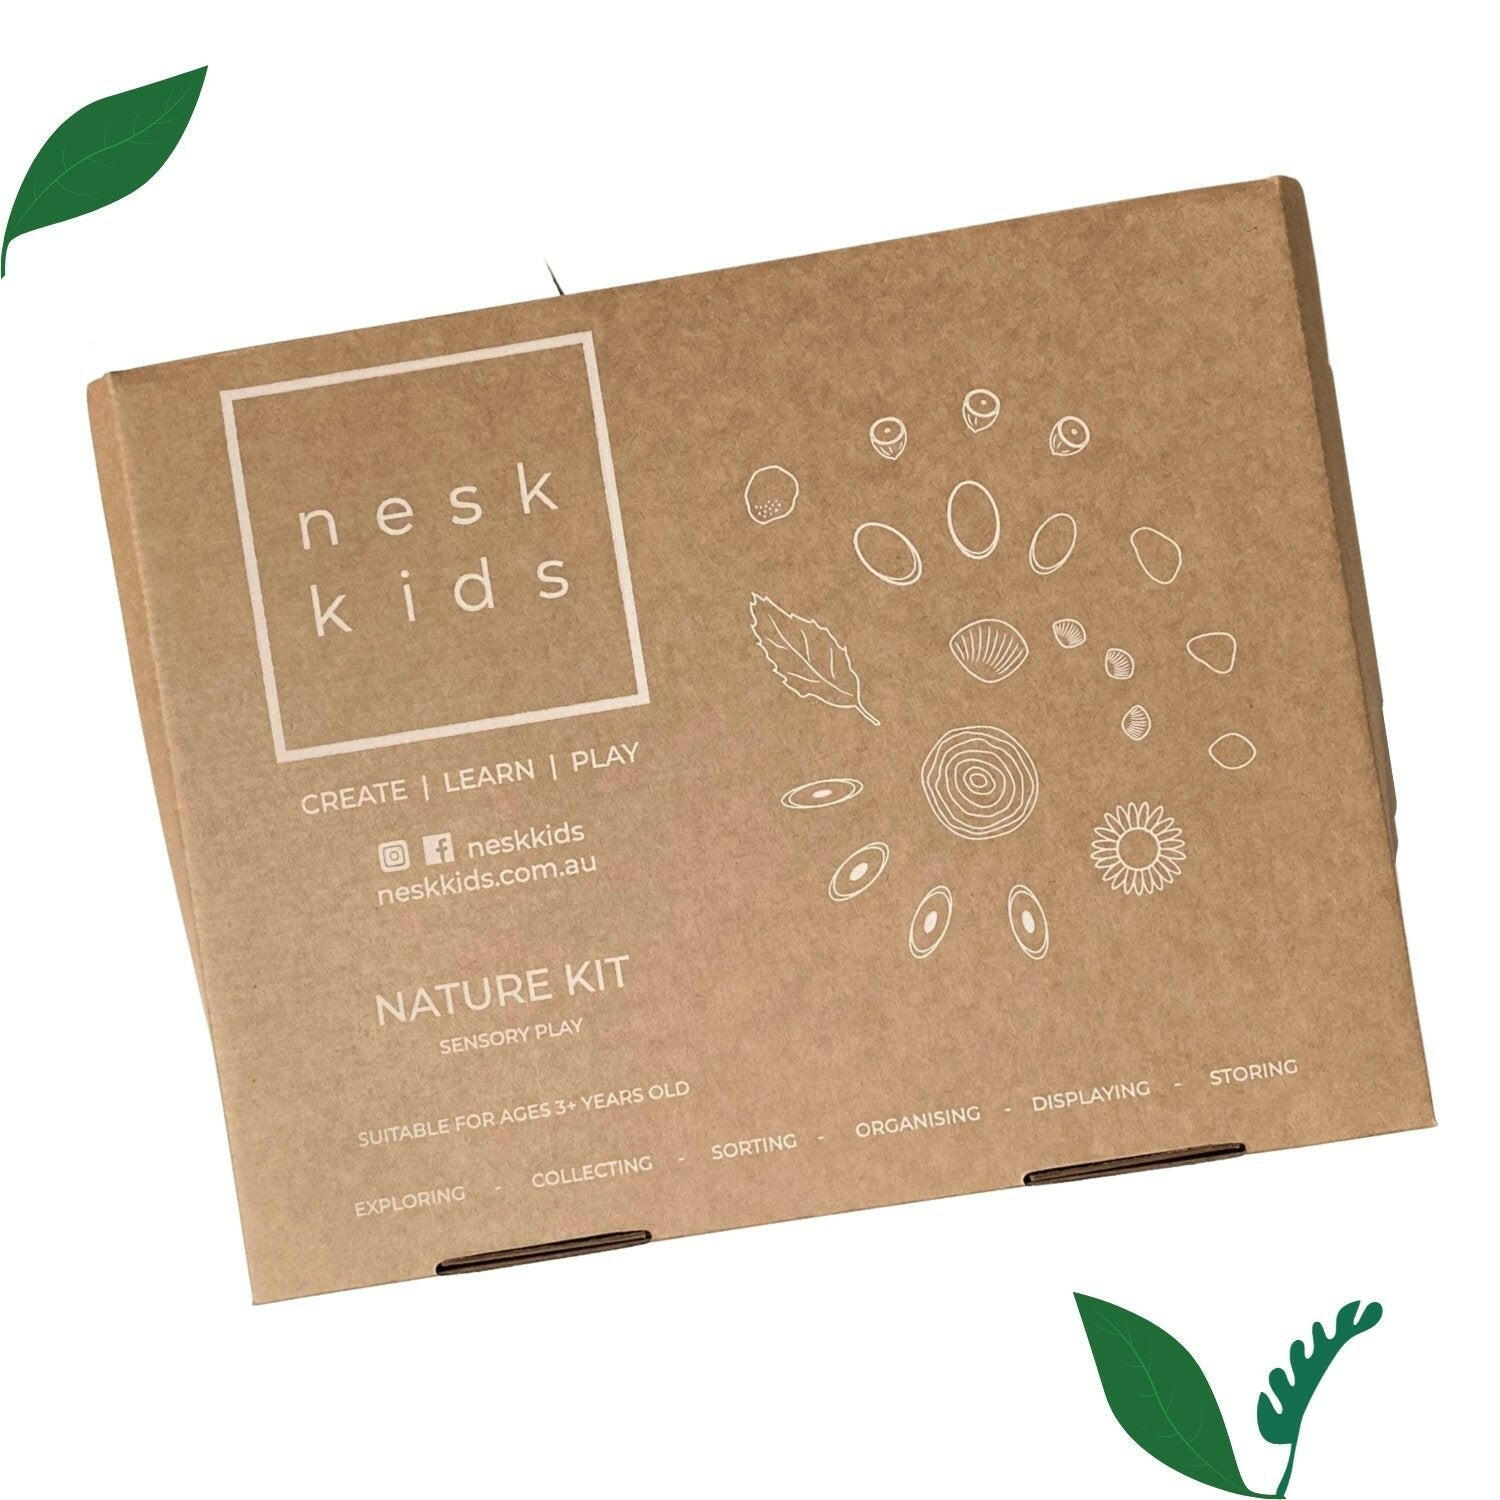 Nesk Kids Nature Kit